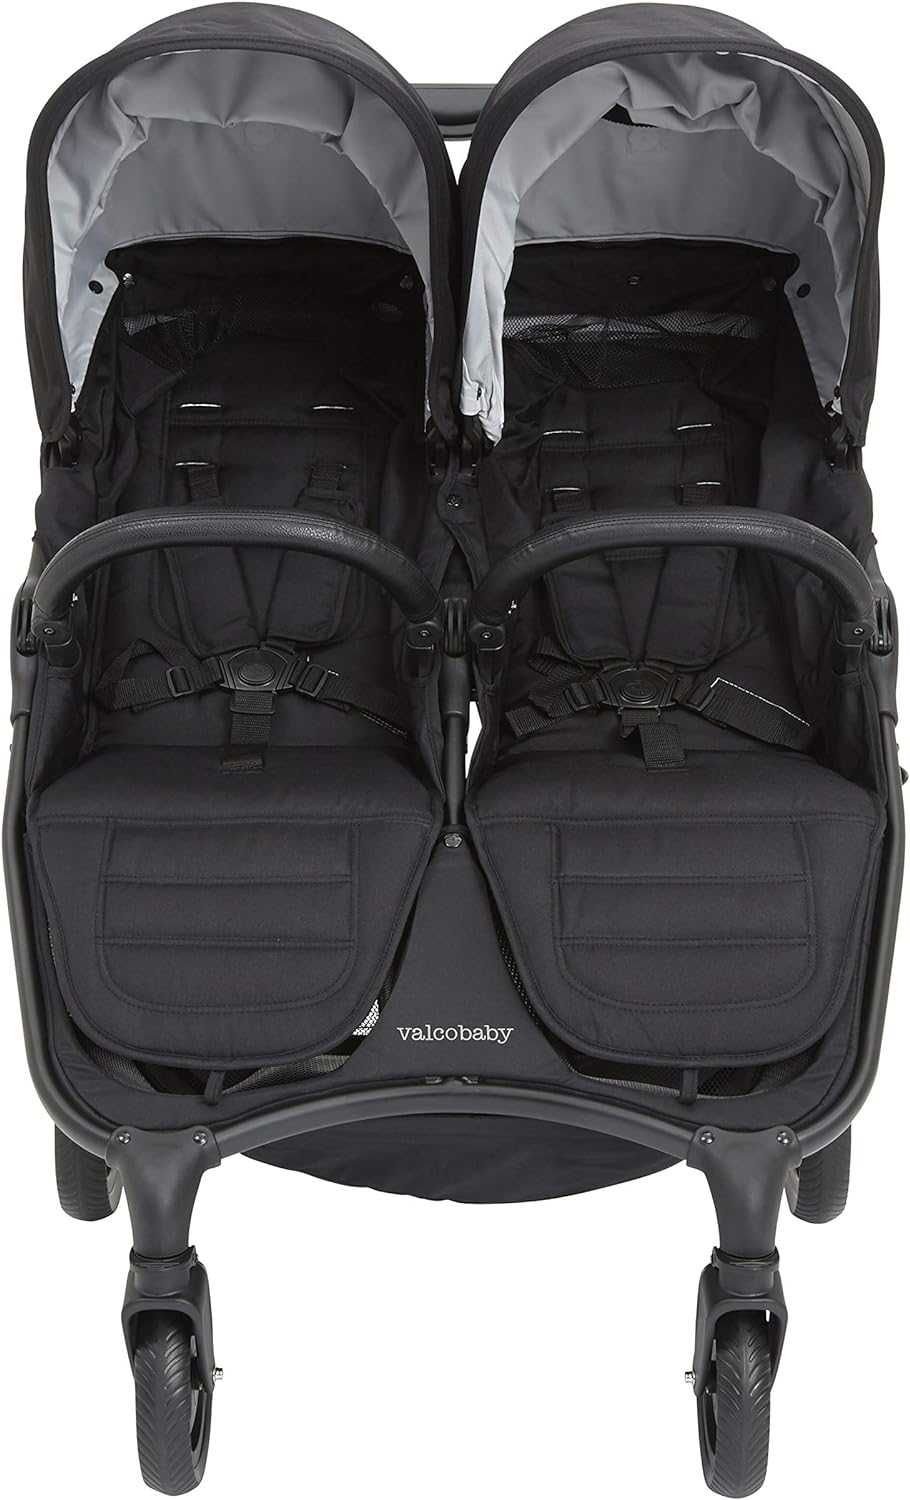 Valco Snap Trend Duo wózek bliźniaczy spacerowy ,opcja 2w1